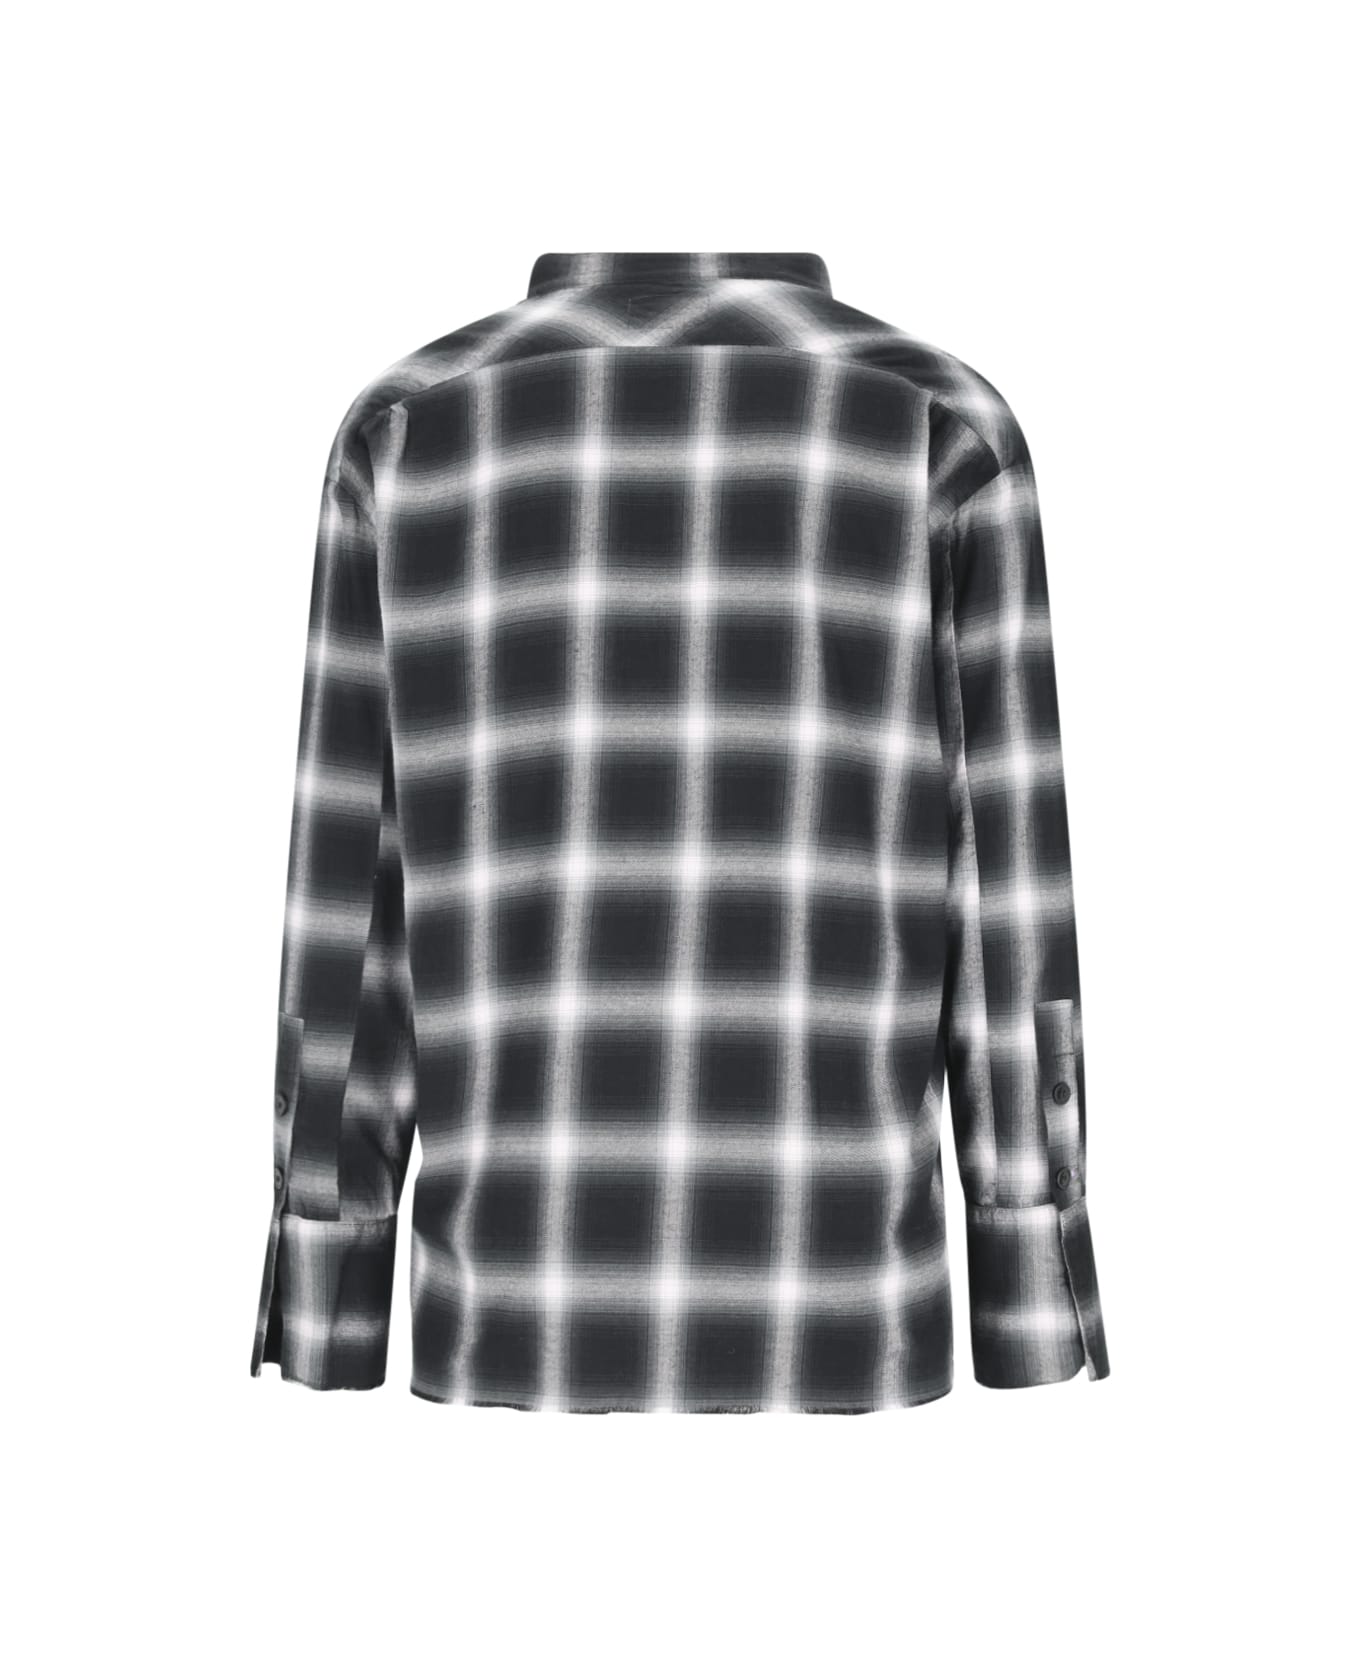 Greg Lauren Check Shirt - Black   シャツ